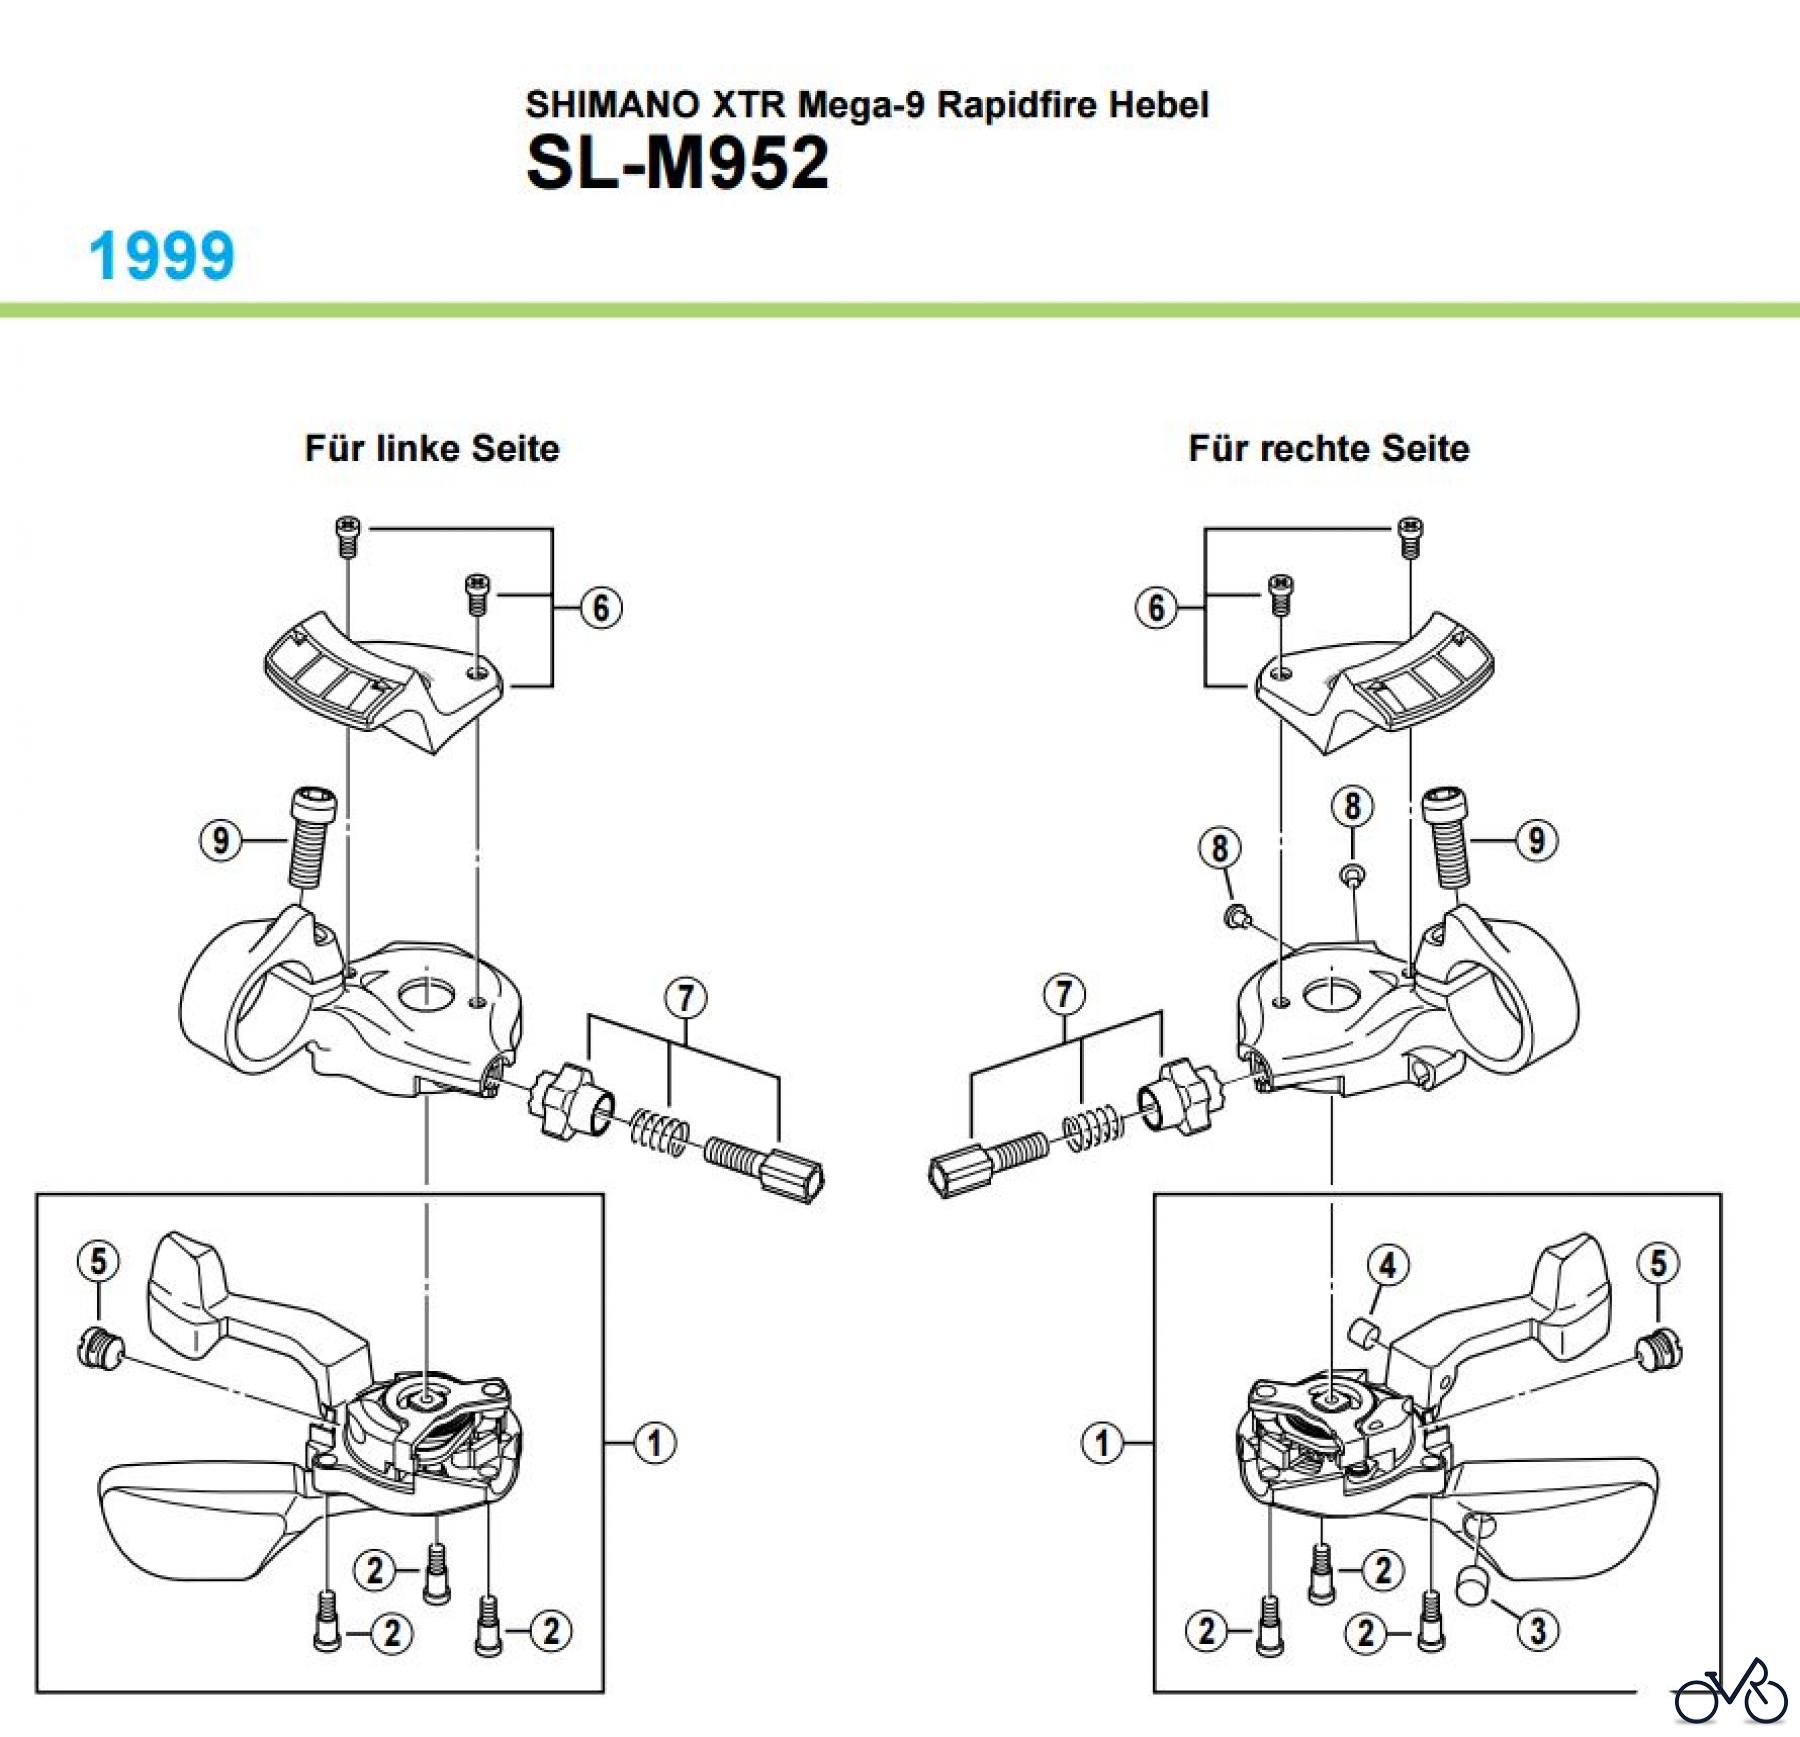  Shimano SL Shift Lever - Schalthebel SL-M952-1782 SHIMANO XTR Mega-9 Rapidfire Hebel